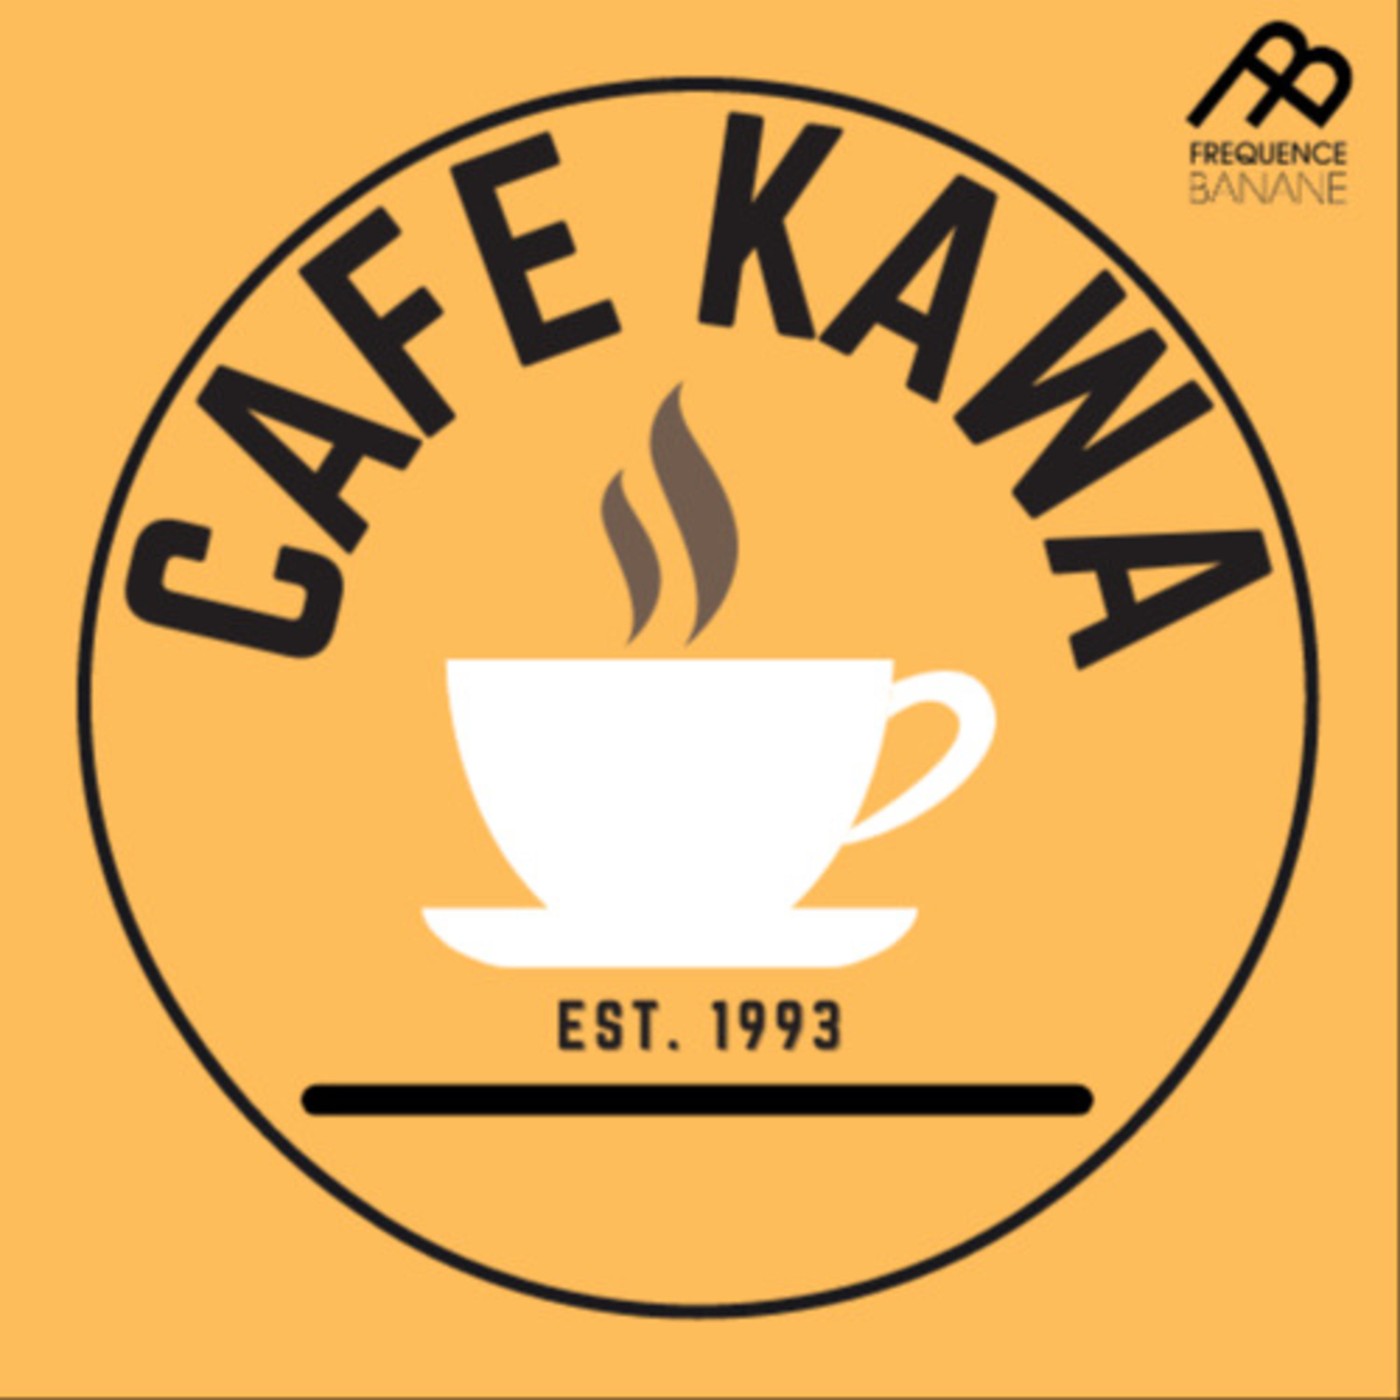 Café Kawa 02.03.21 - Mosquito Vibes